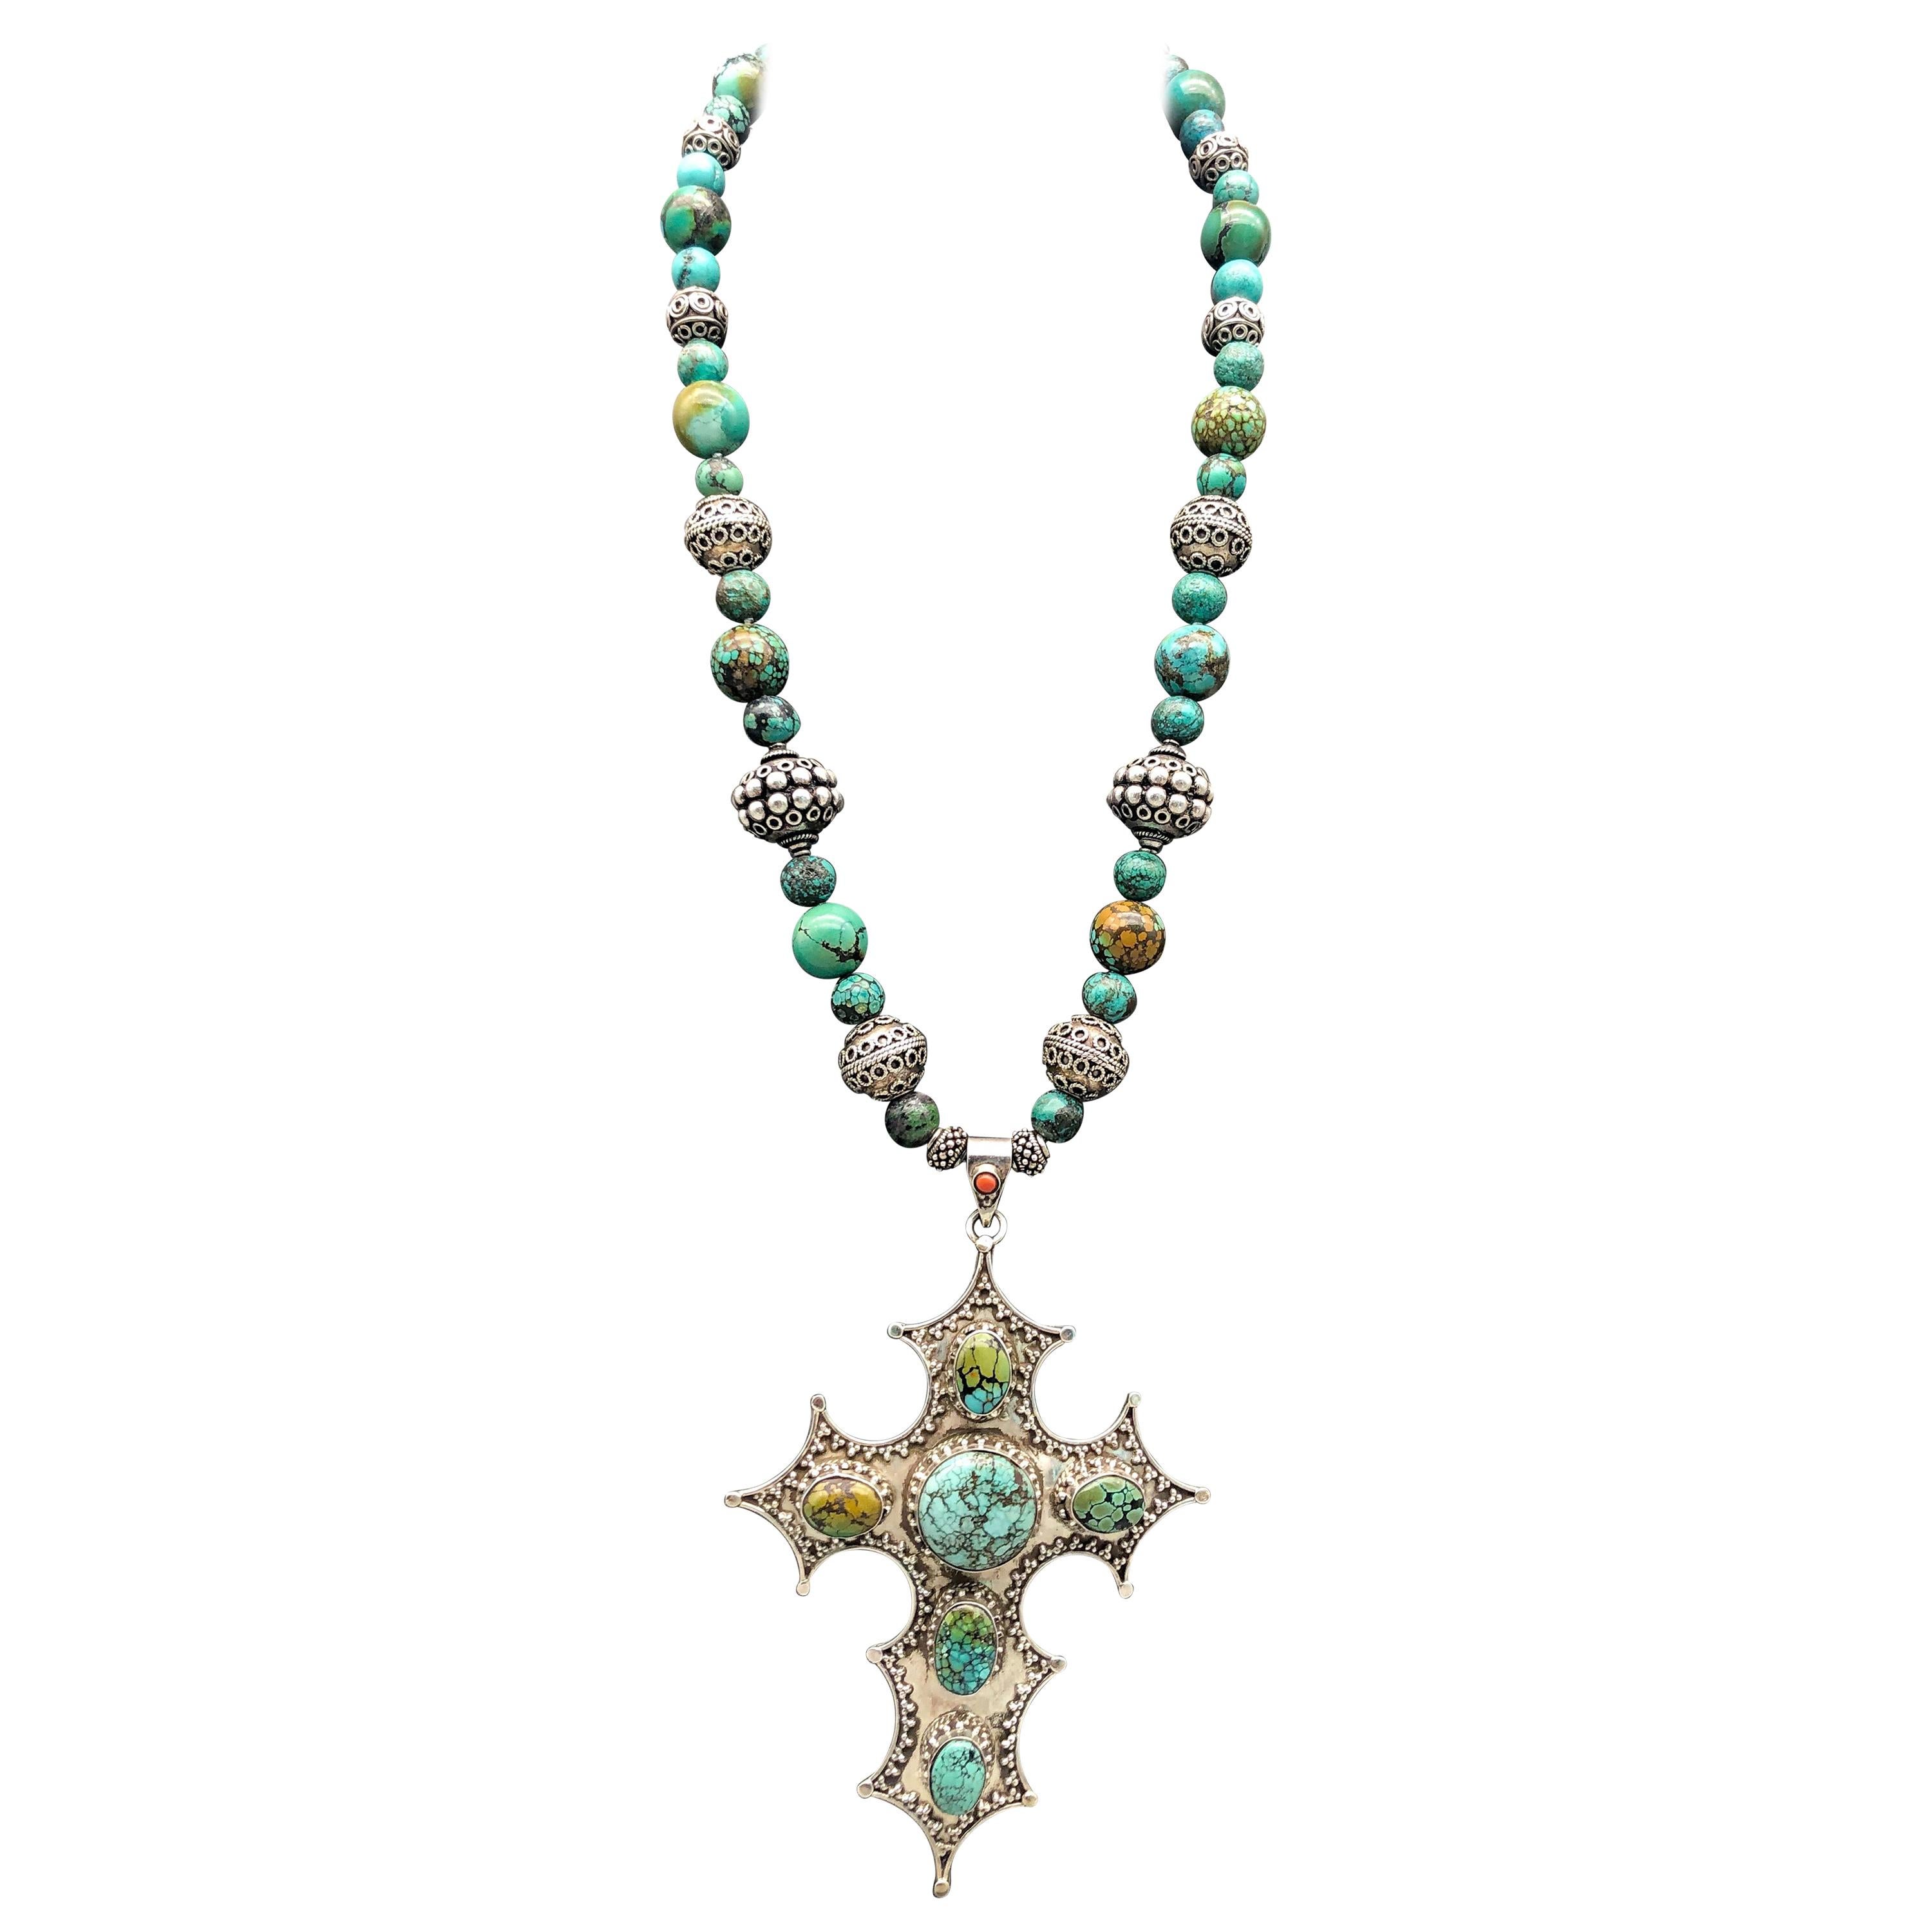 One Master Turquoise Stone Necklace 